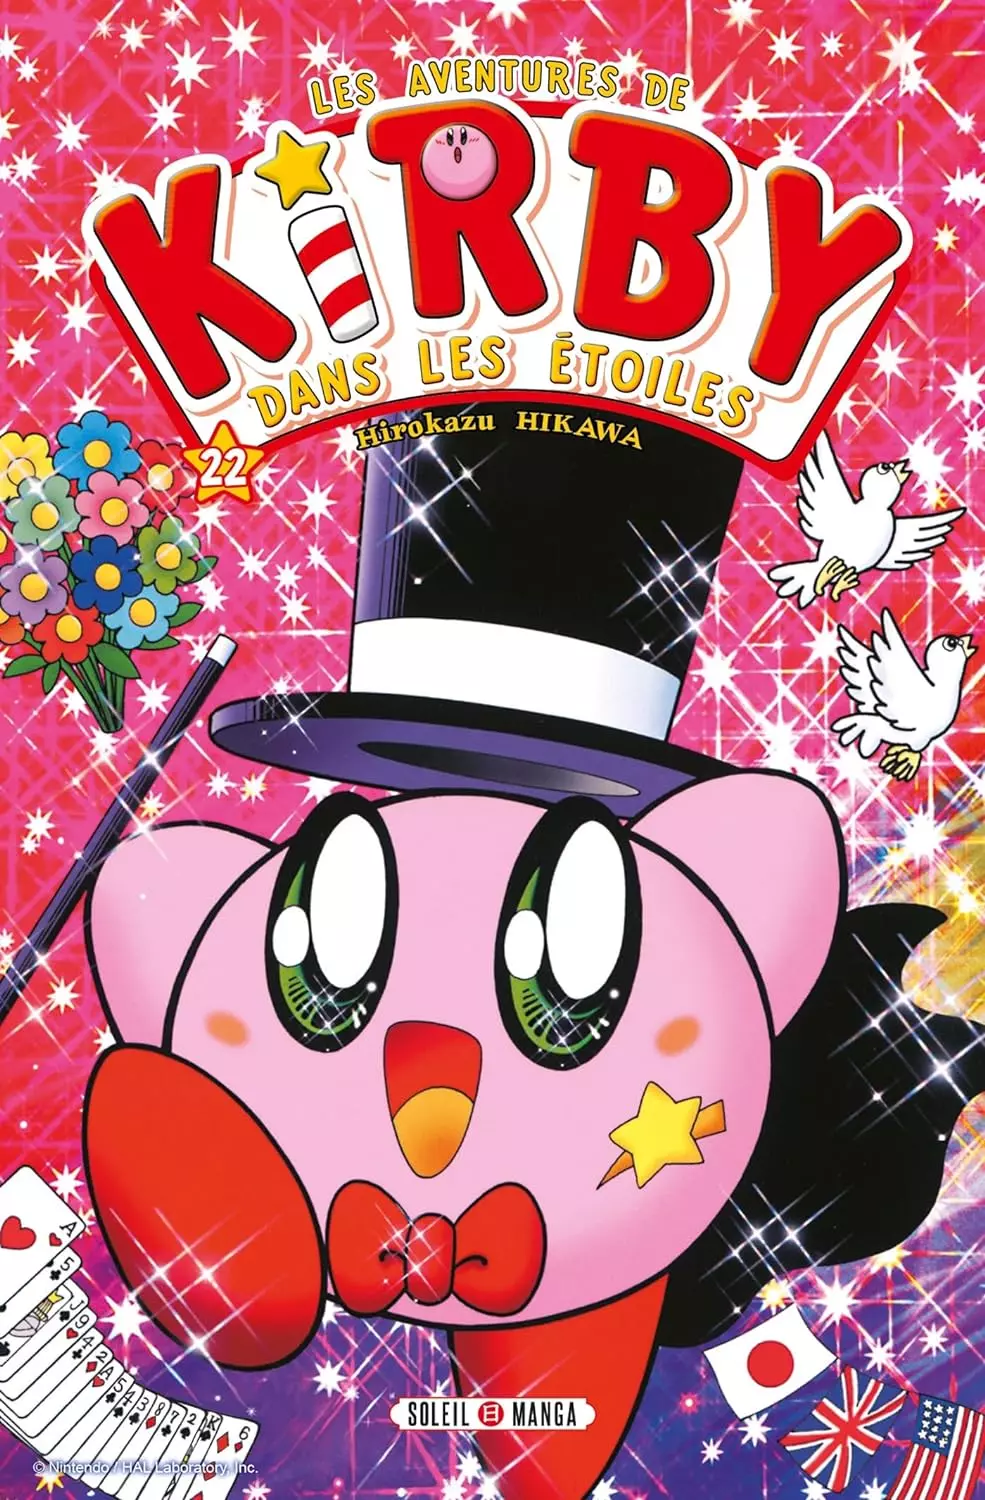 Aventures de Kirby dans les étoiles (les) Vol.22